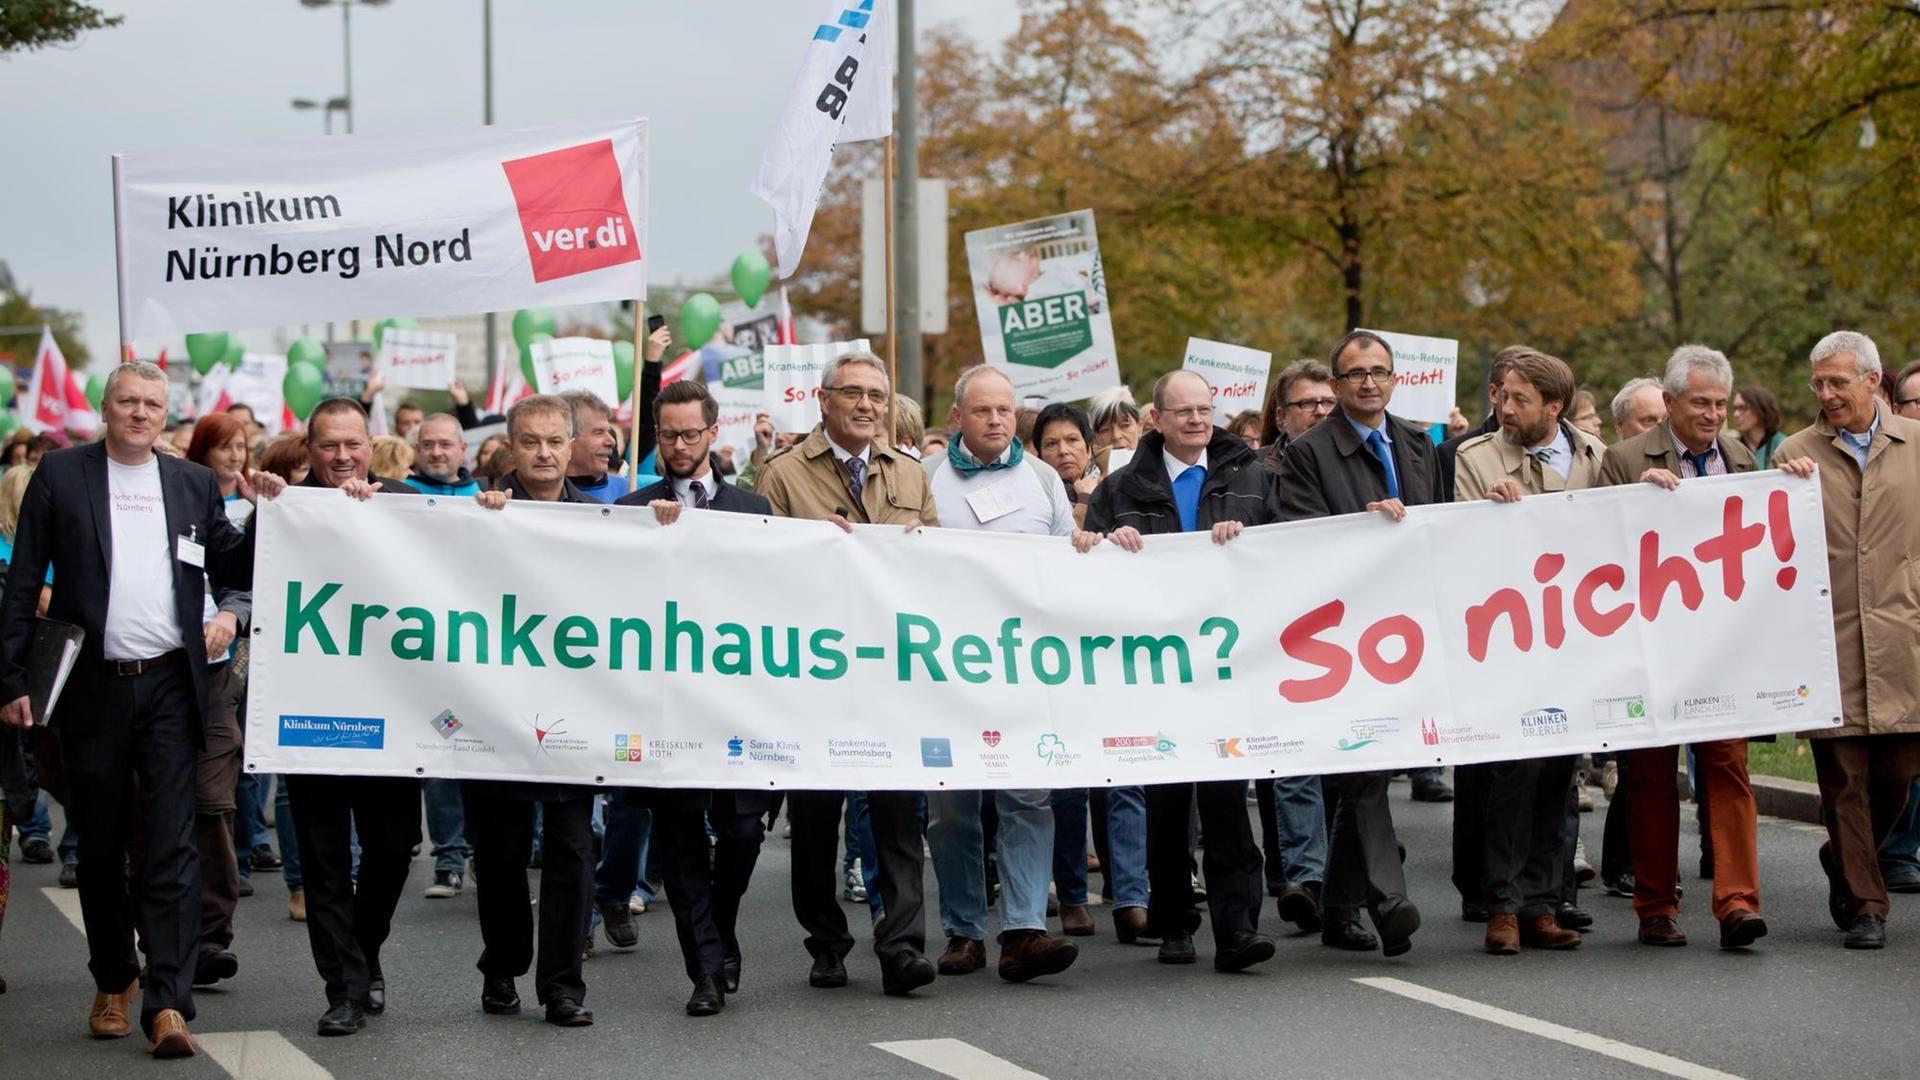 Geschäftsführer Mittelfränkischer Kliniken tragen am 23.09.2015 in Nürnberg (Bayern) einen Banner mit der Aufschrift "Krankenhaus-Reform? So nicht!". Mehrere hundert Klinikmitarbeiter protestierten gegen die bevorstehende Krankenhausreform.